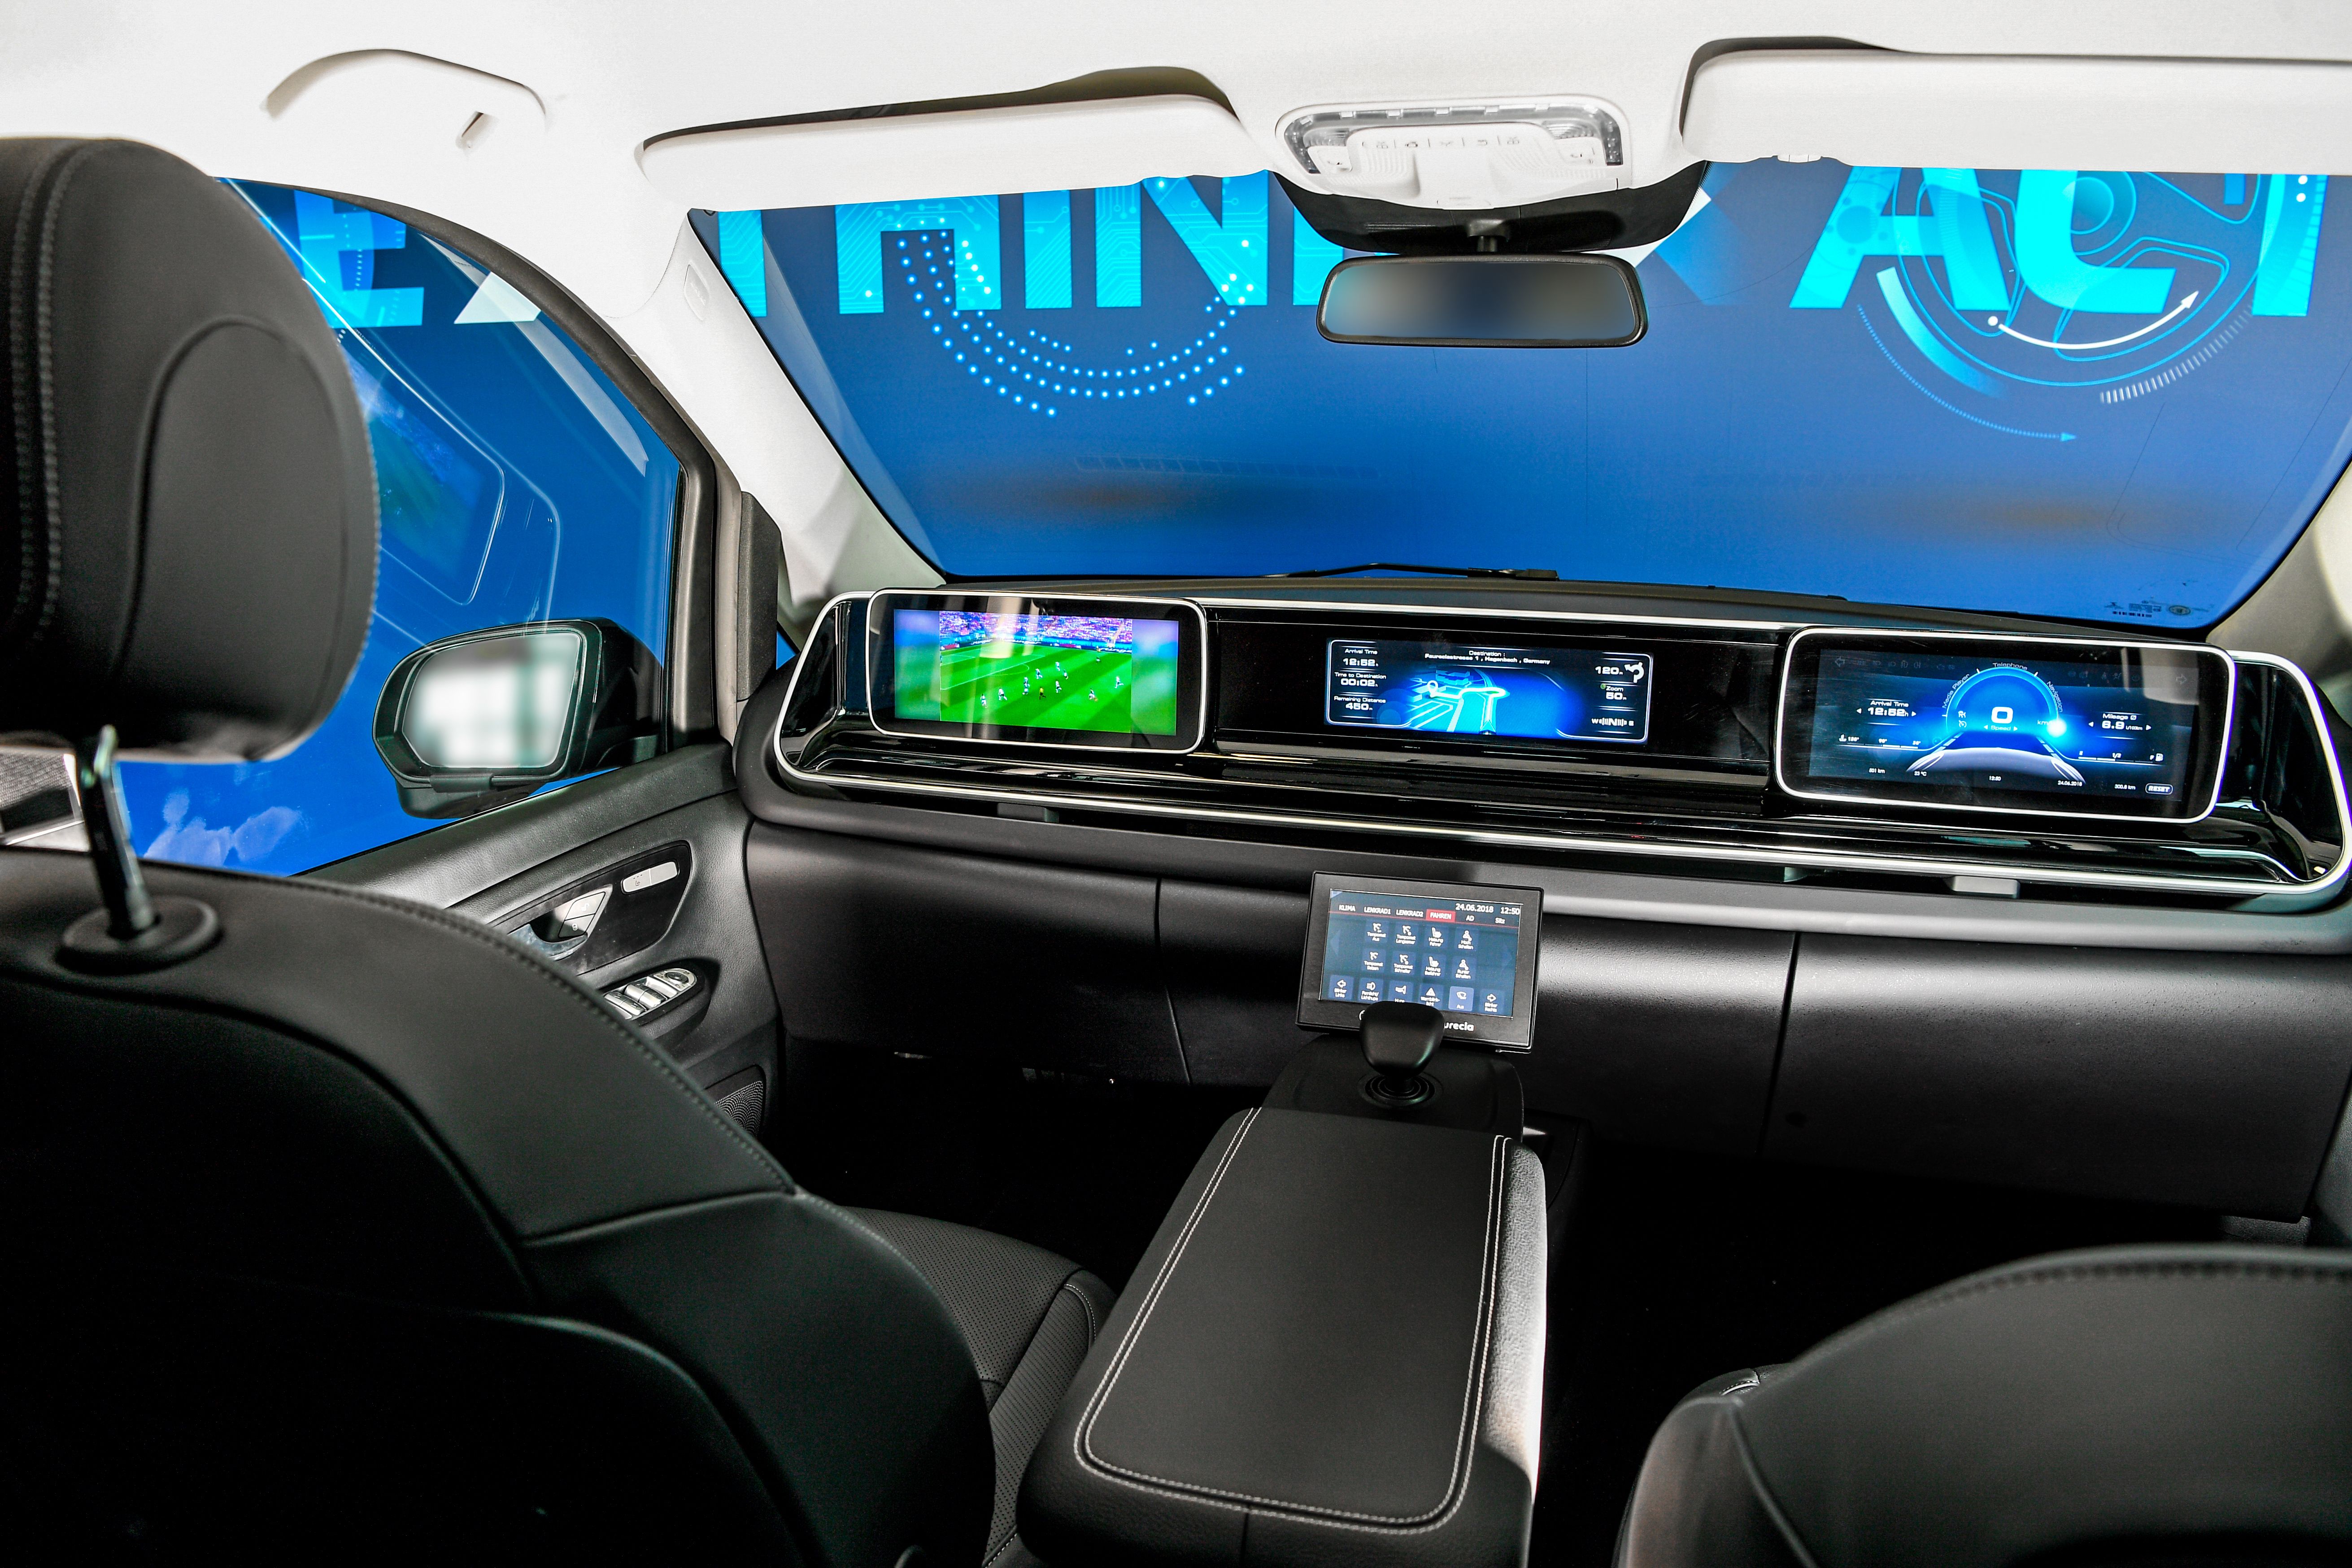 Zf The Auto Interior Of The Future Zf